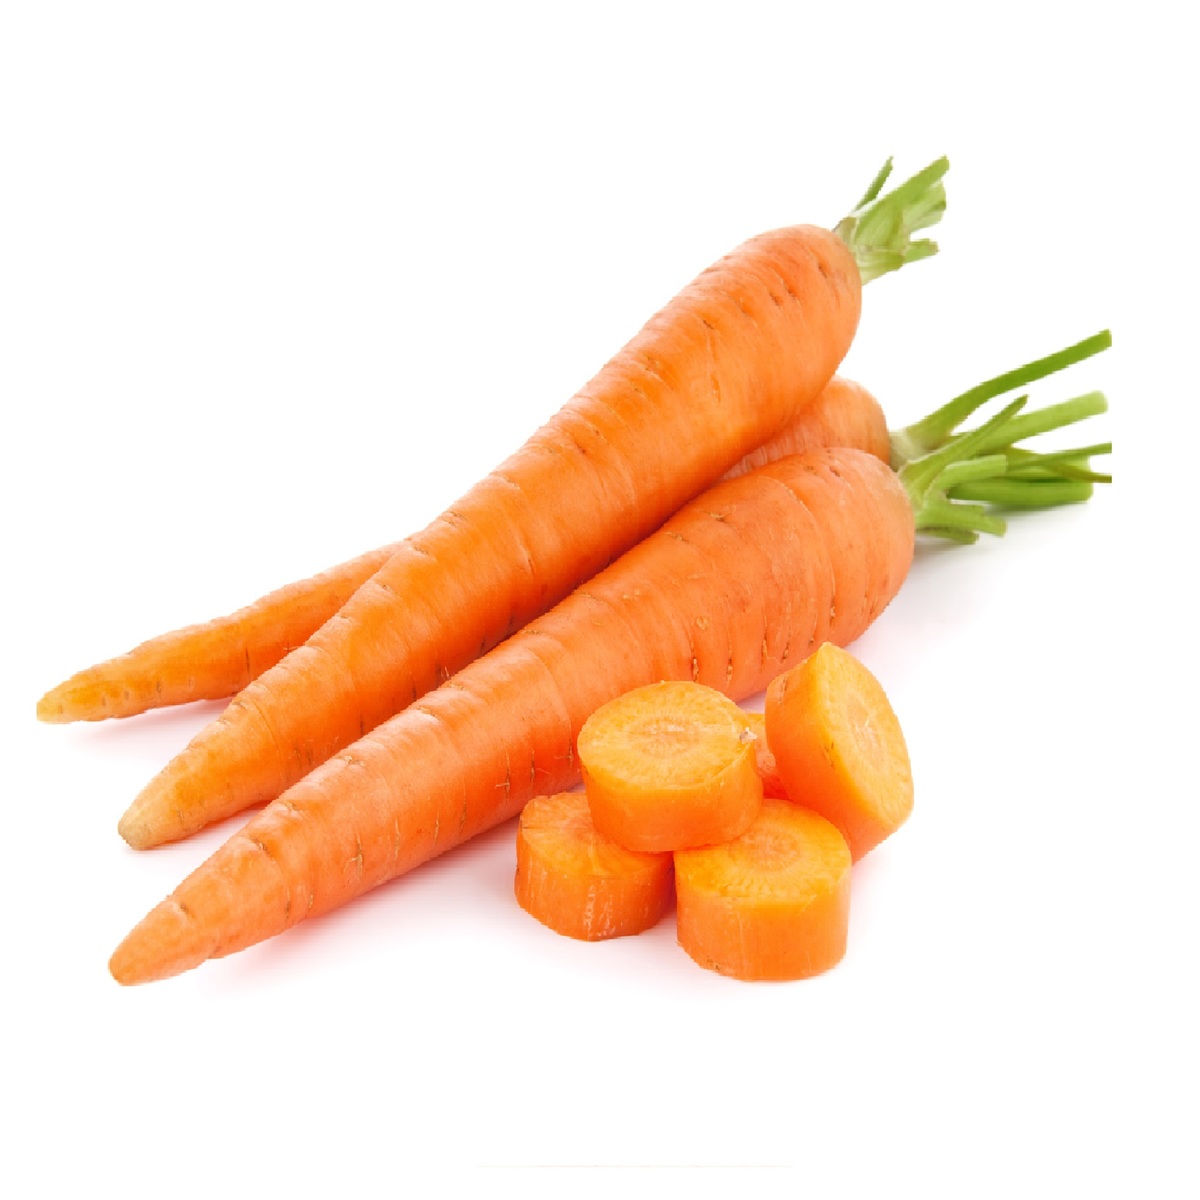 Carrot Oman 1kg Online at Best Price | Carrot | Lulu KSA price in Saudi ...